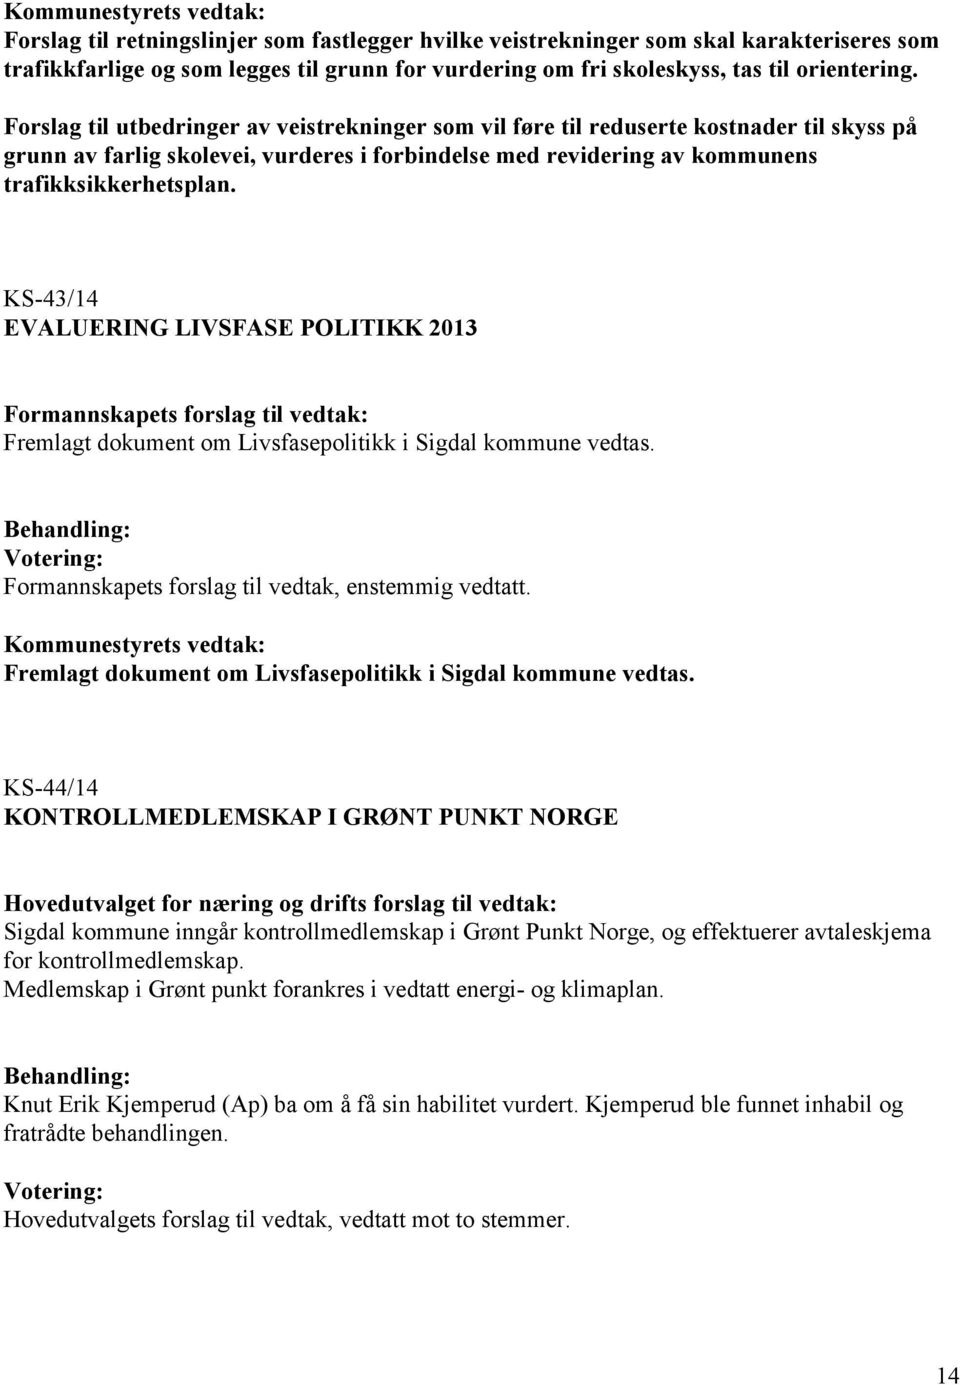 KS-43/14 EVALUERING LIVSFASE POLITIKK 2013 Fremlagt dokument om Livsfasepolitikk i Sigdal kommune vedtas. Formannskapets forslag til vedtak, enstemmig vedtatt.